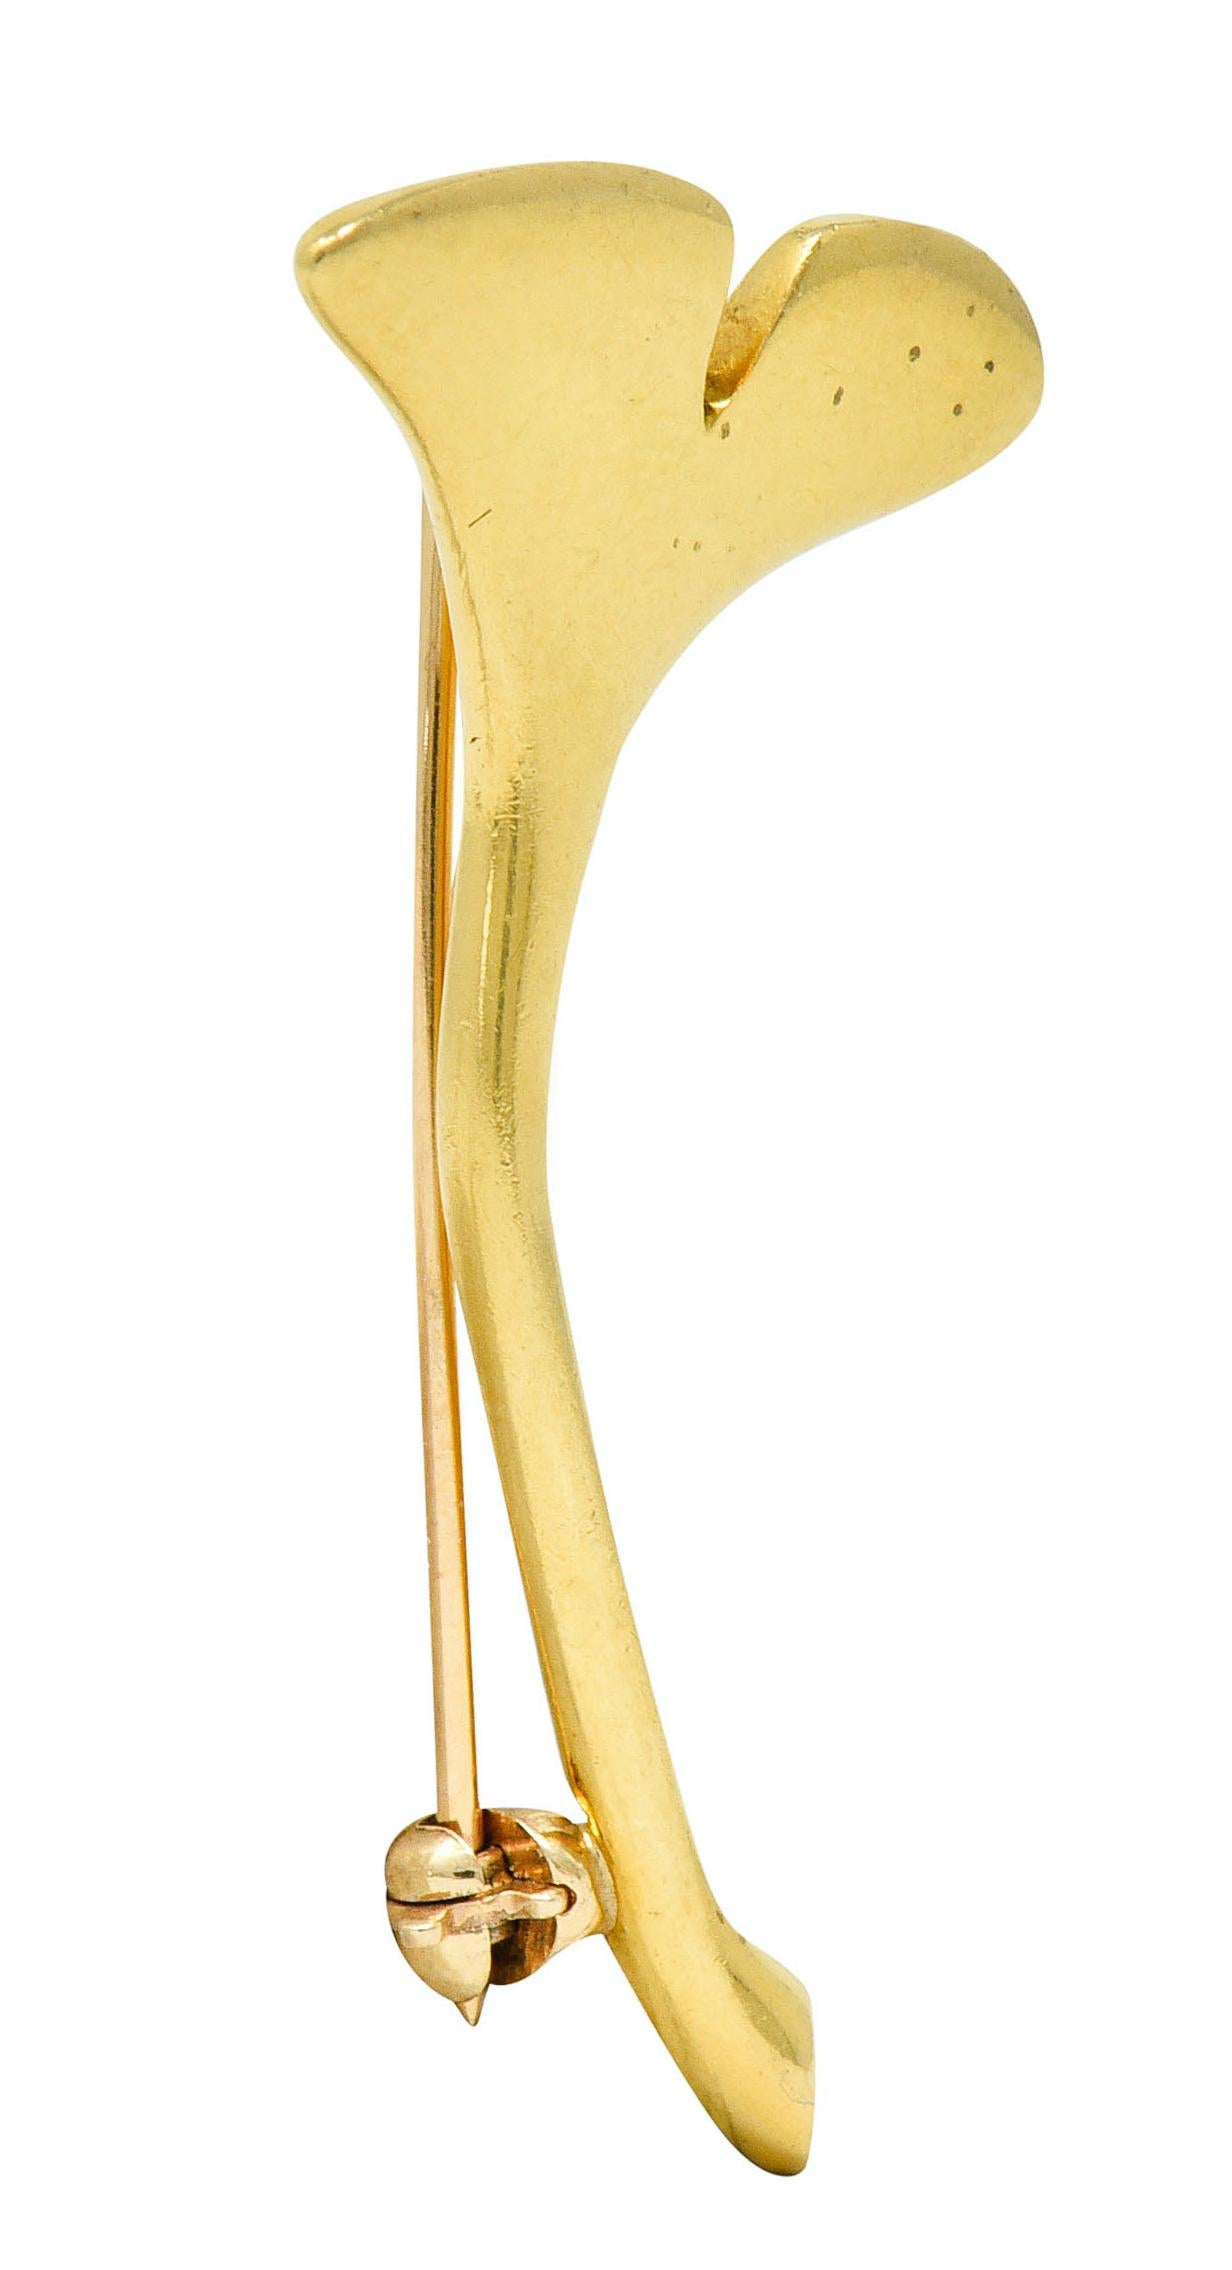 Contemporary Angela Cummings Tiffany & Co. 18 Karat Gold Ginkgo Leaf Brooch